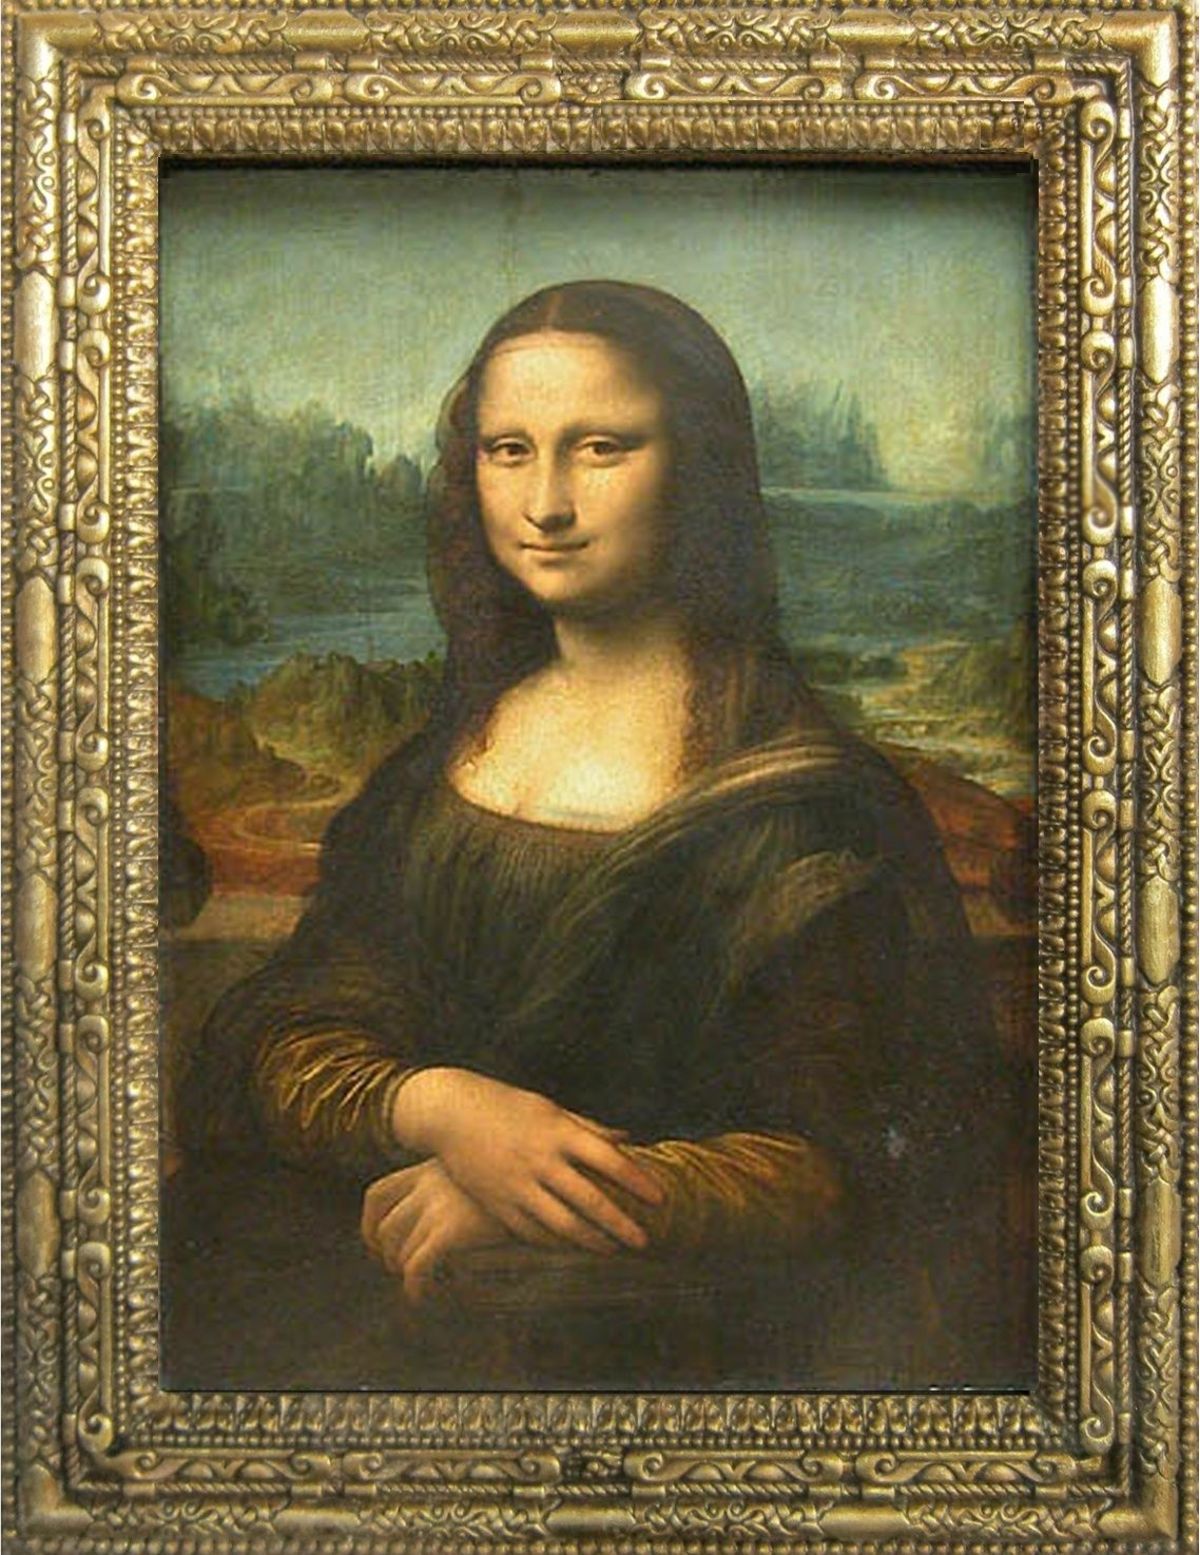 Bạn đang muốn tìm hiểu cách vẽ Mona Lisa? Điều đó không còn là một bí mật nữa. Tranh vẽ này có một bí mật đặc biệt và huyền bí đằng sau việc tạo nên bức tranh nổi tiếng nhất thế giới. Hãy khám phá ngay bây giờ.